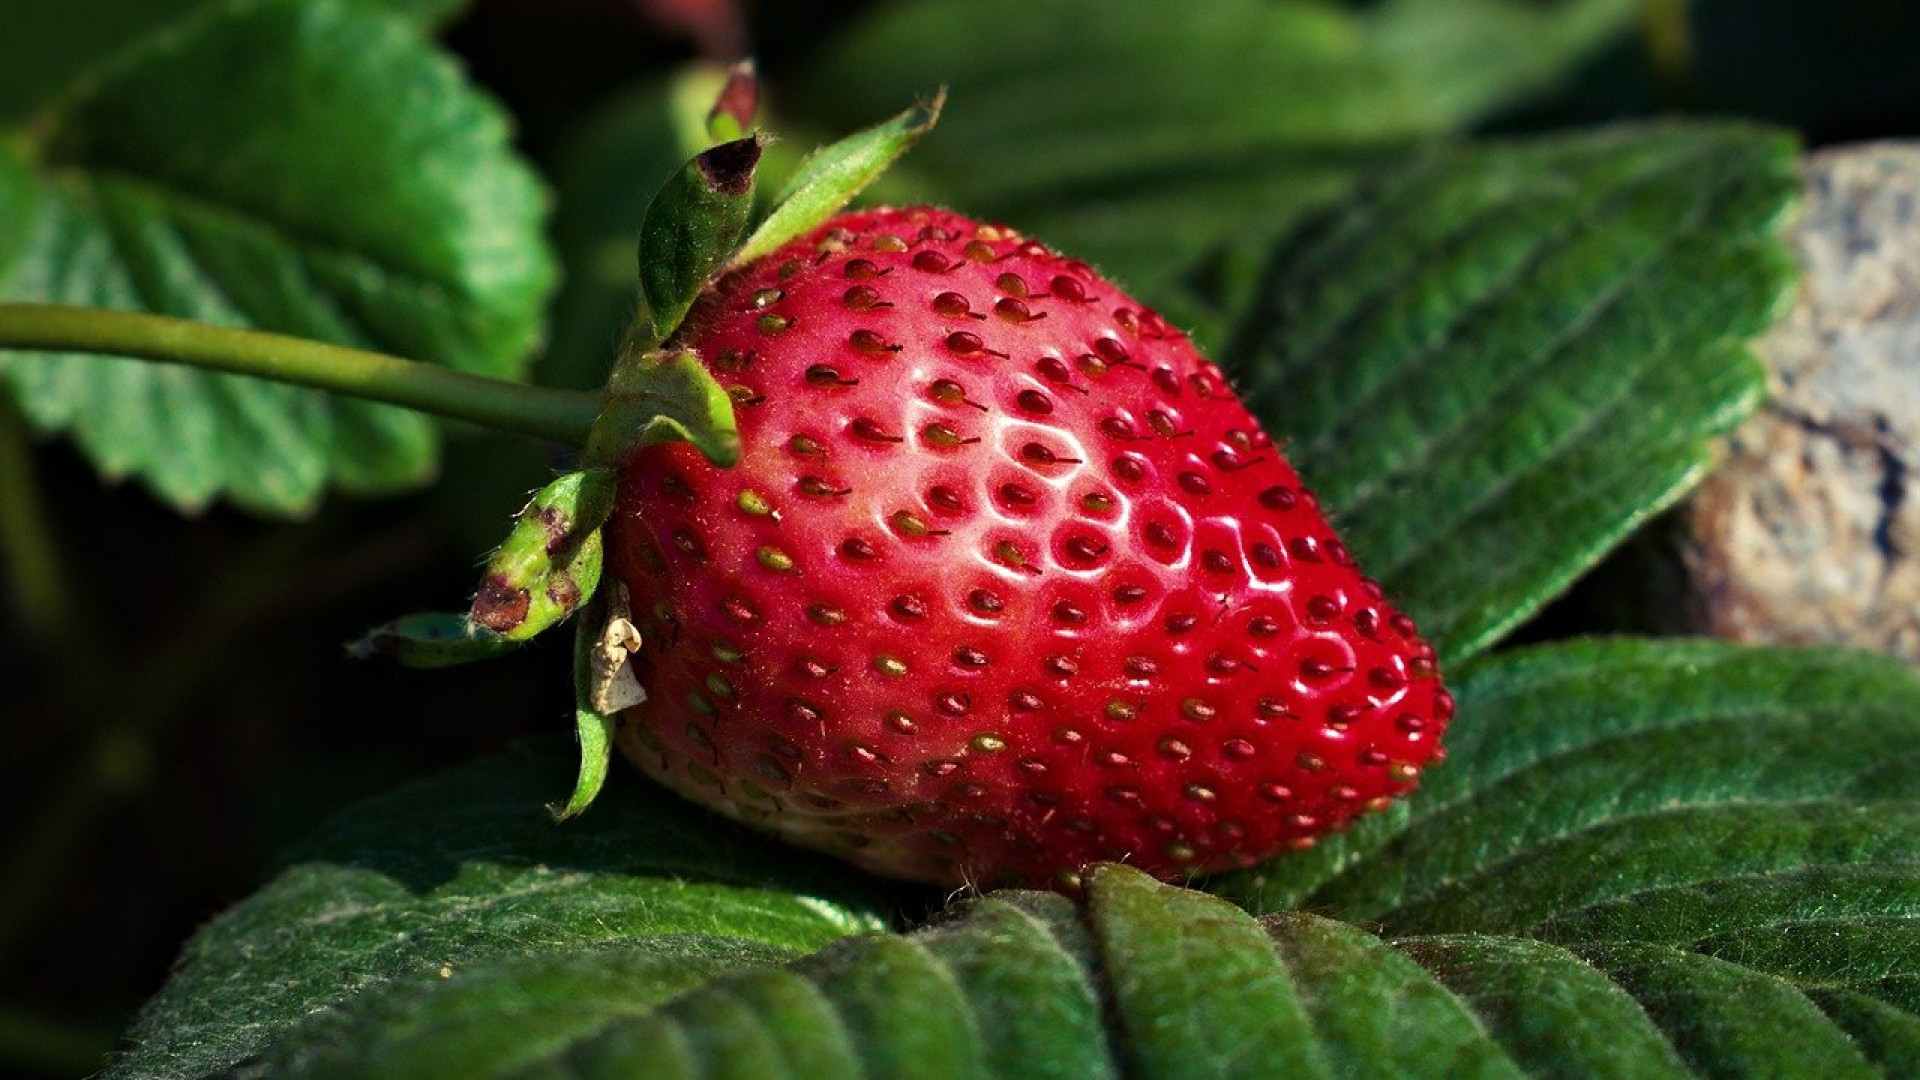 Planter des fraisiers dans une gouttière : les avantages